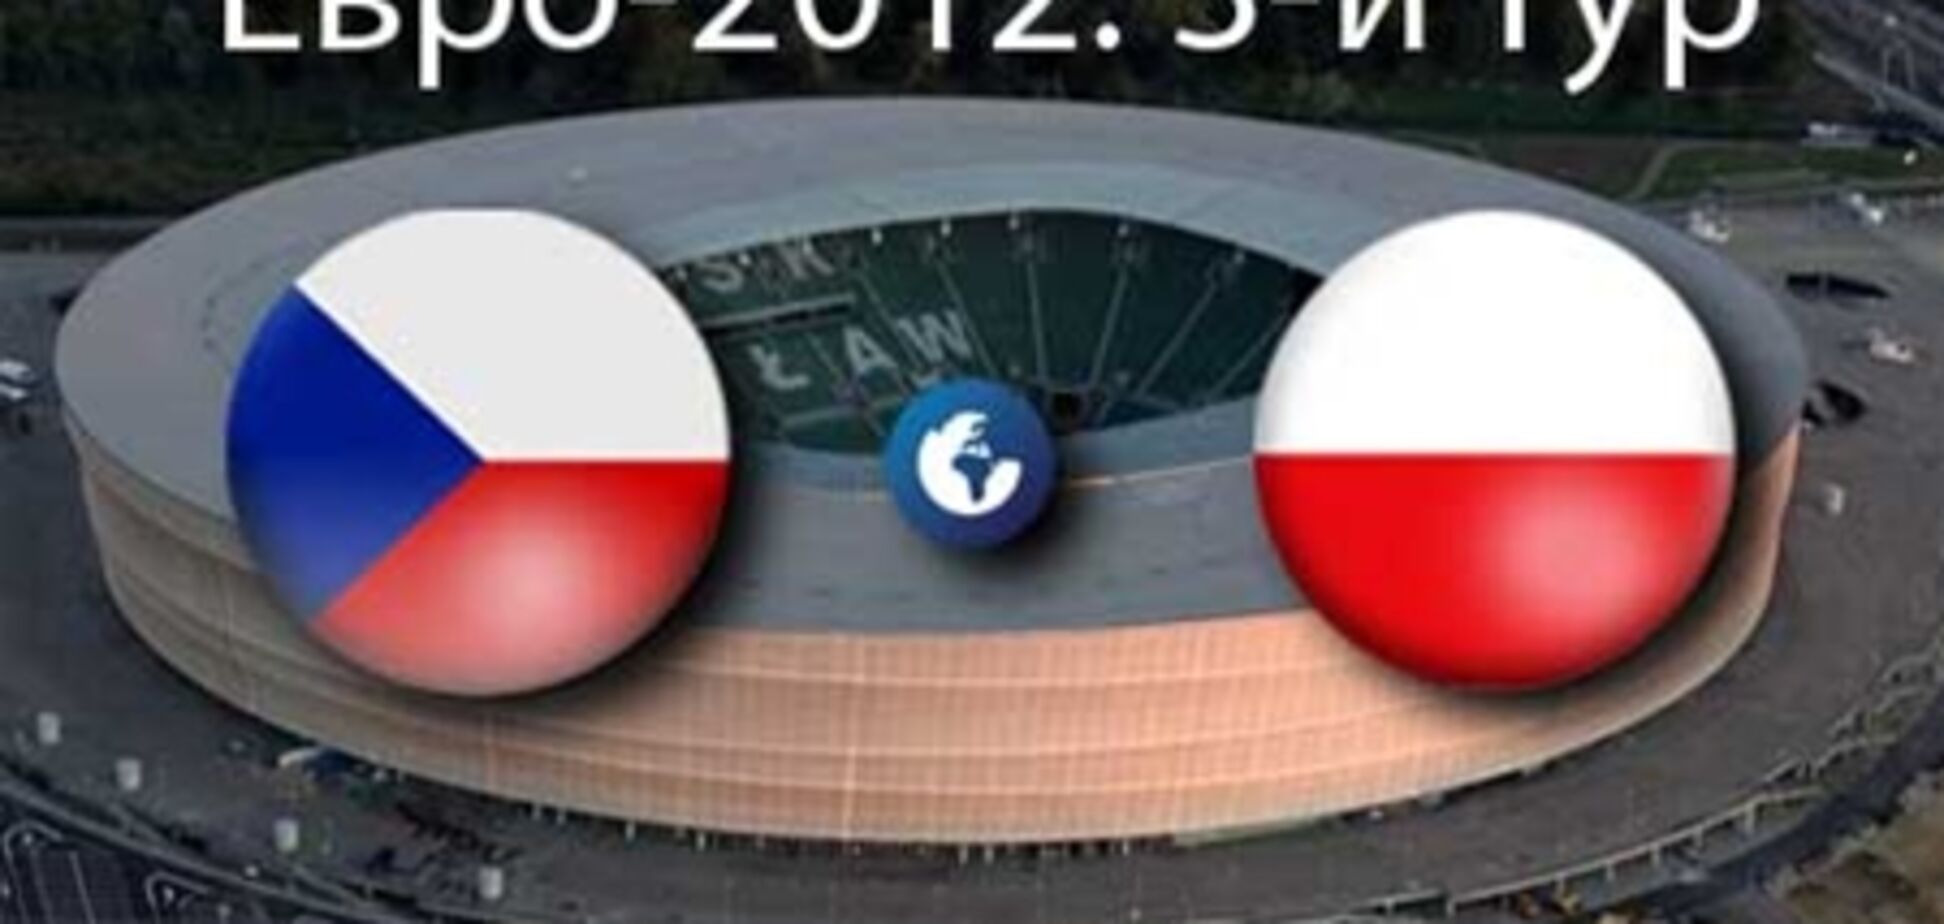 Евро-2012. Чехия - Польша - 1:0. Хронология матча